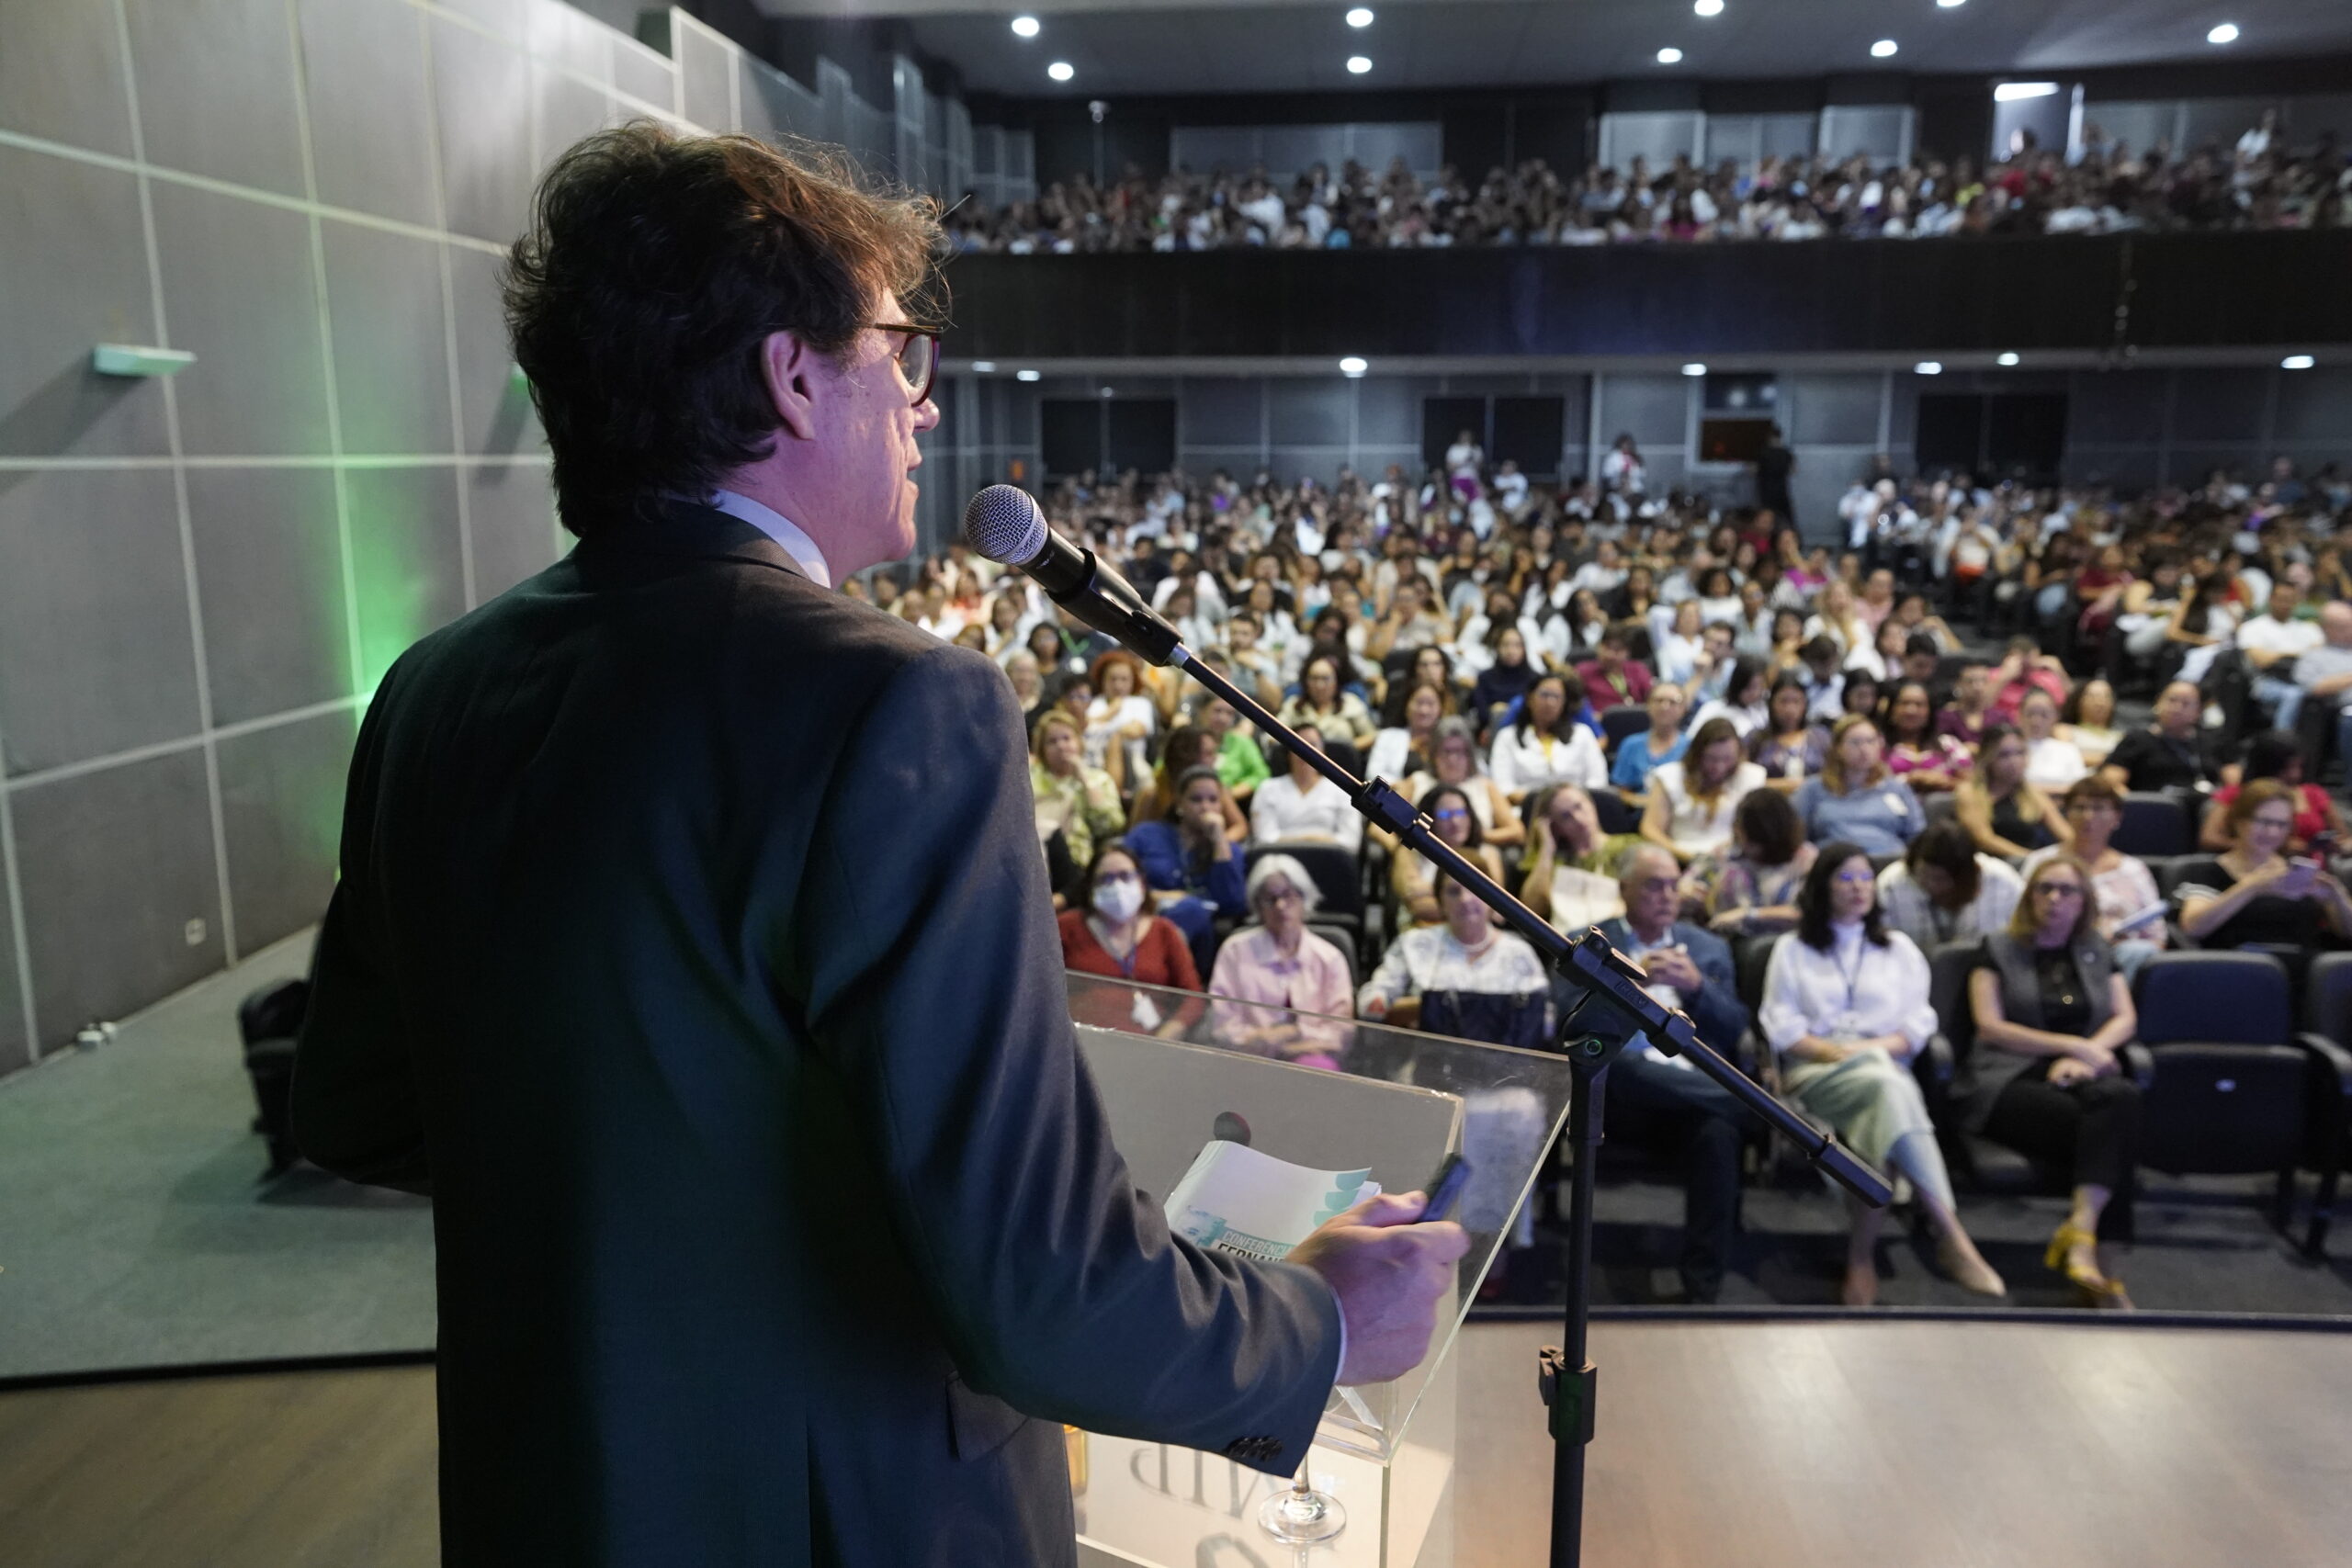 Palestra sobre “Desafios e Perspectivas na qualidade da formação em saúde do Brasil” marca a XXXIII Conferência Fernando Figueira